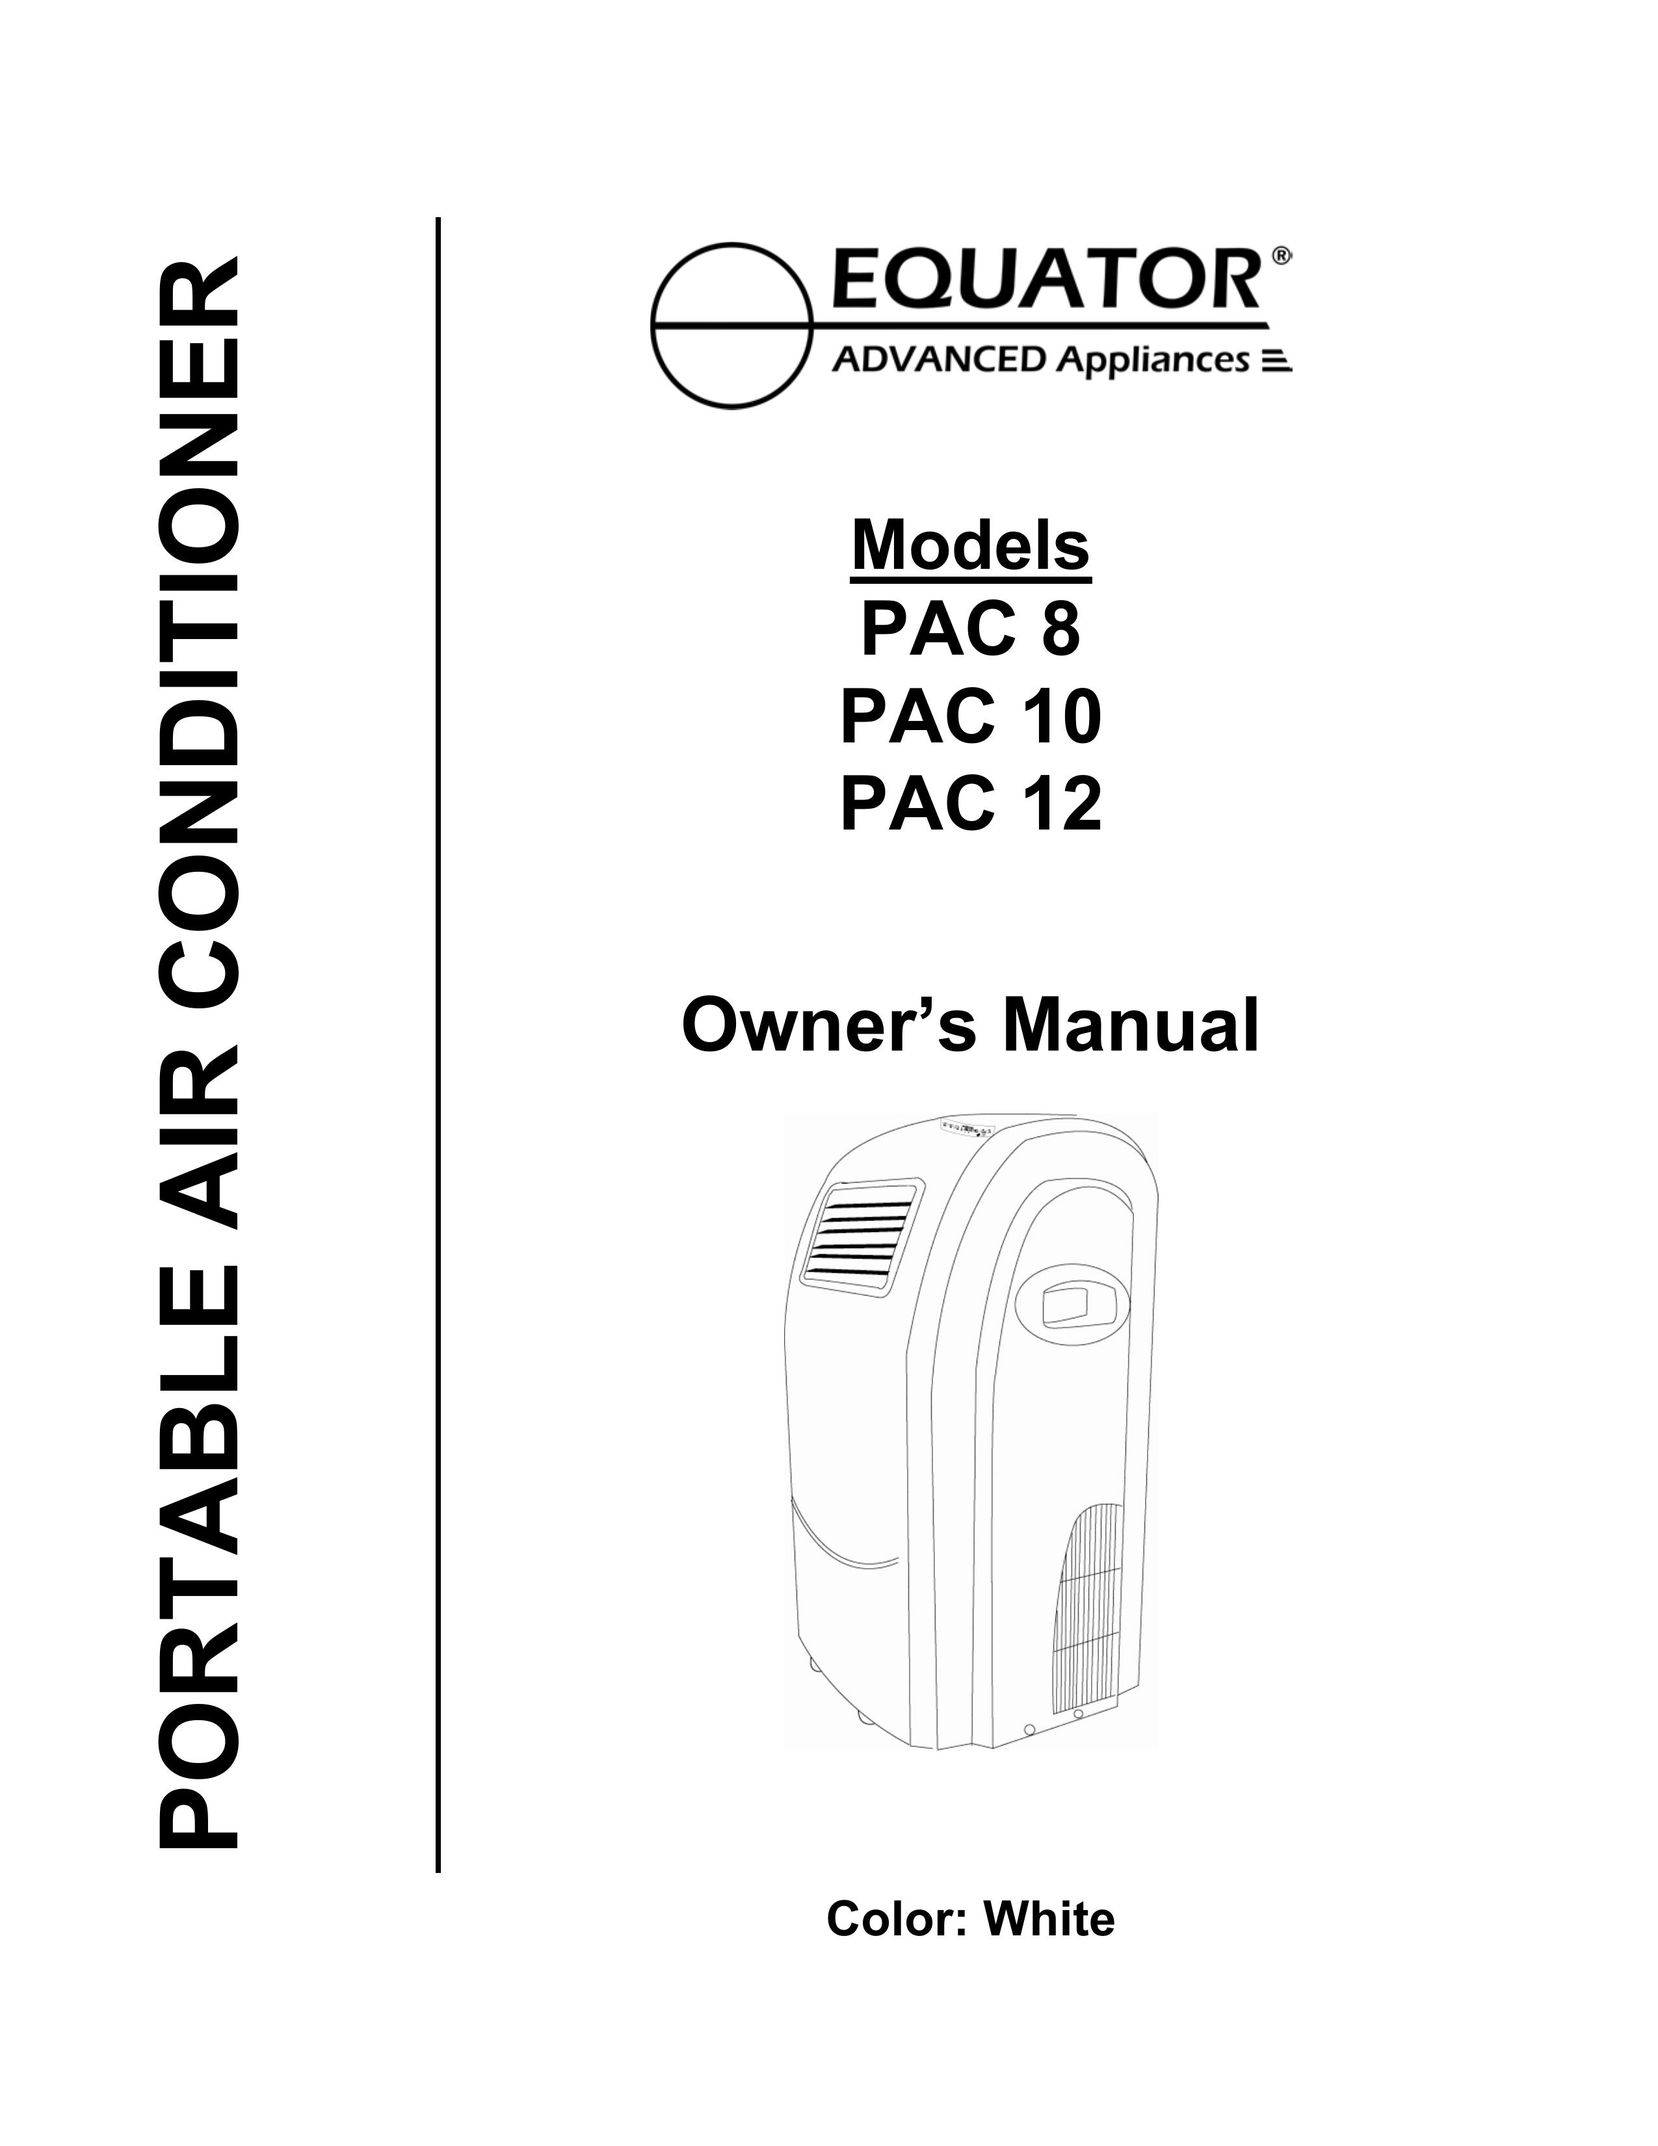 Equator PAC 10 Air Conditioner User Manual